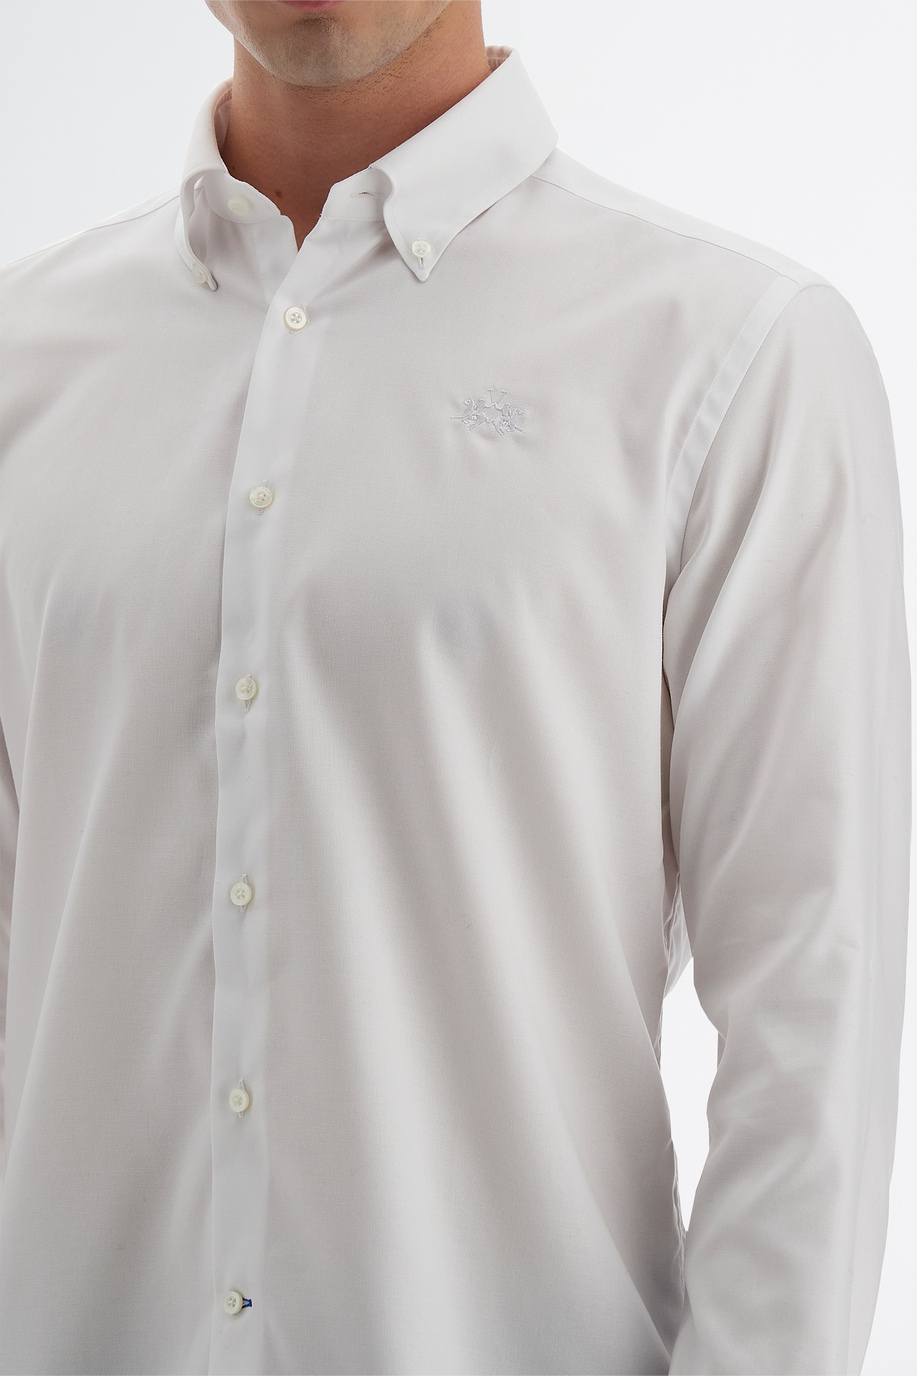 Men’s classic style long sleeve cotton shirt - Passion - test 2 | La Martina - Official Online Shop